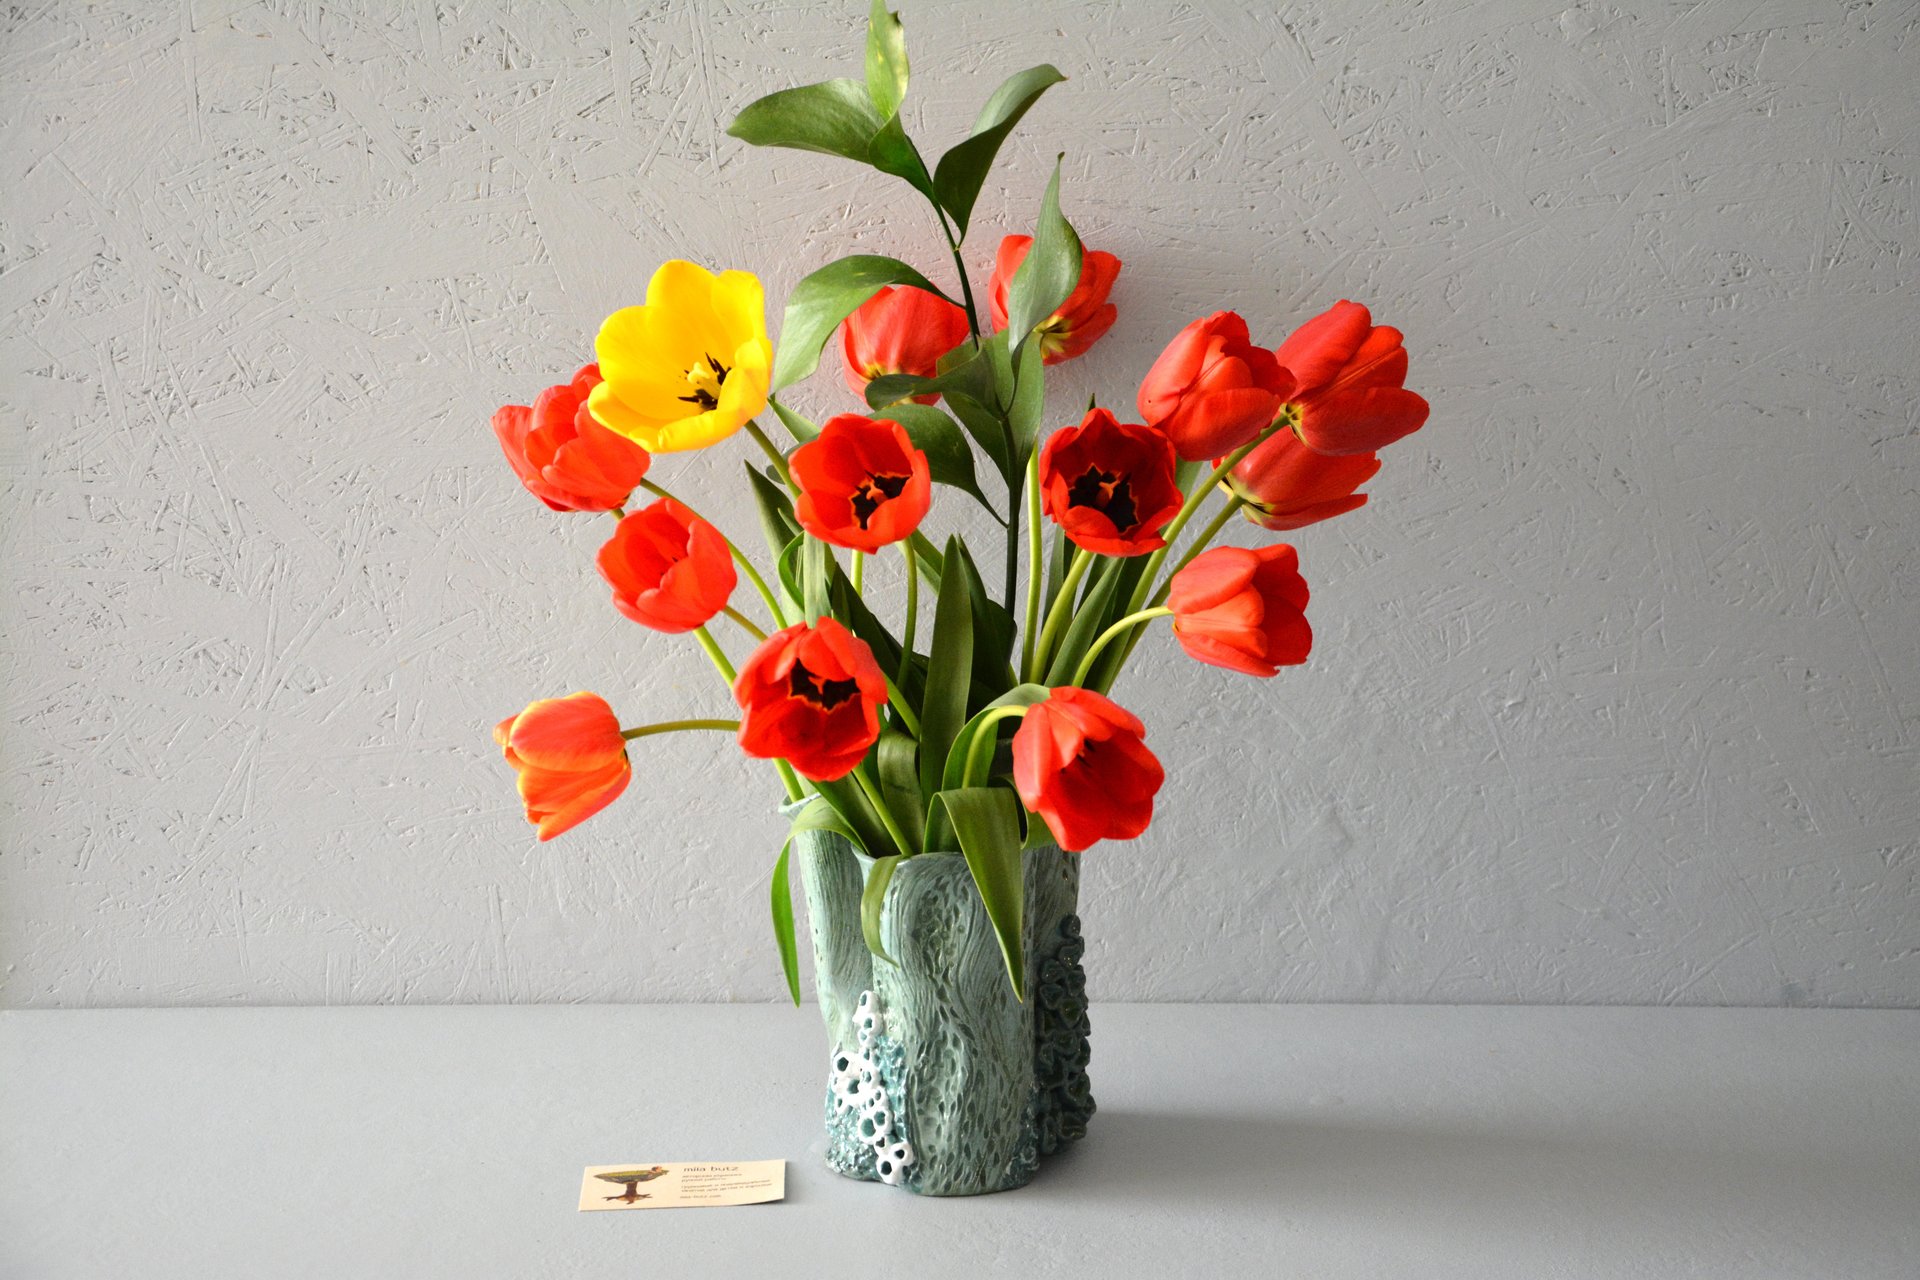 Декоративная керамическая ваза для цветов — Коралл, высота - 19 см, цвет - голубо-зелёный, фото 4 из 5. 1041.